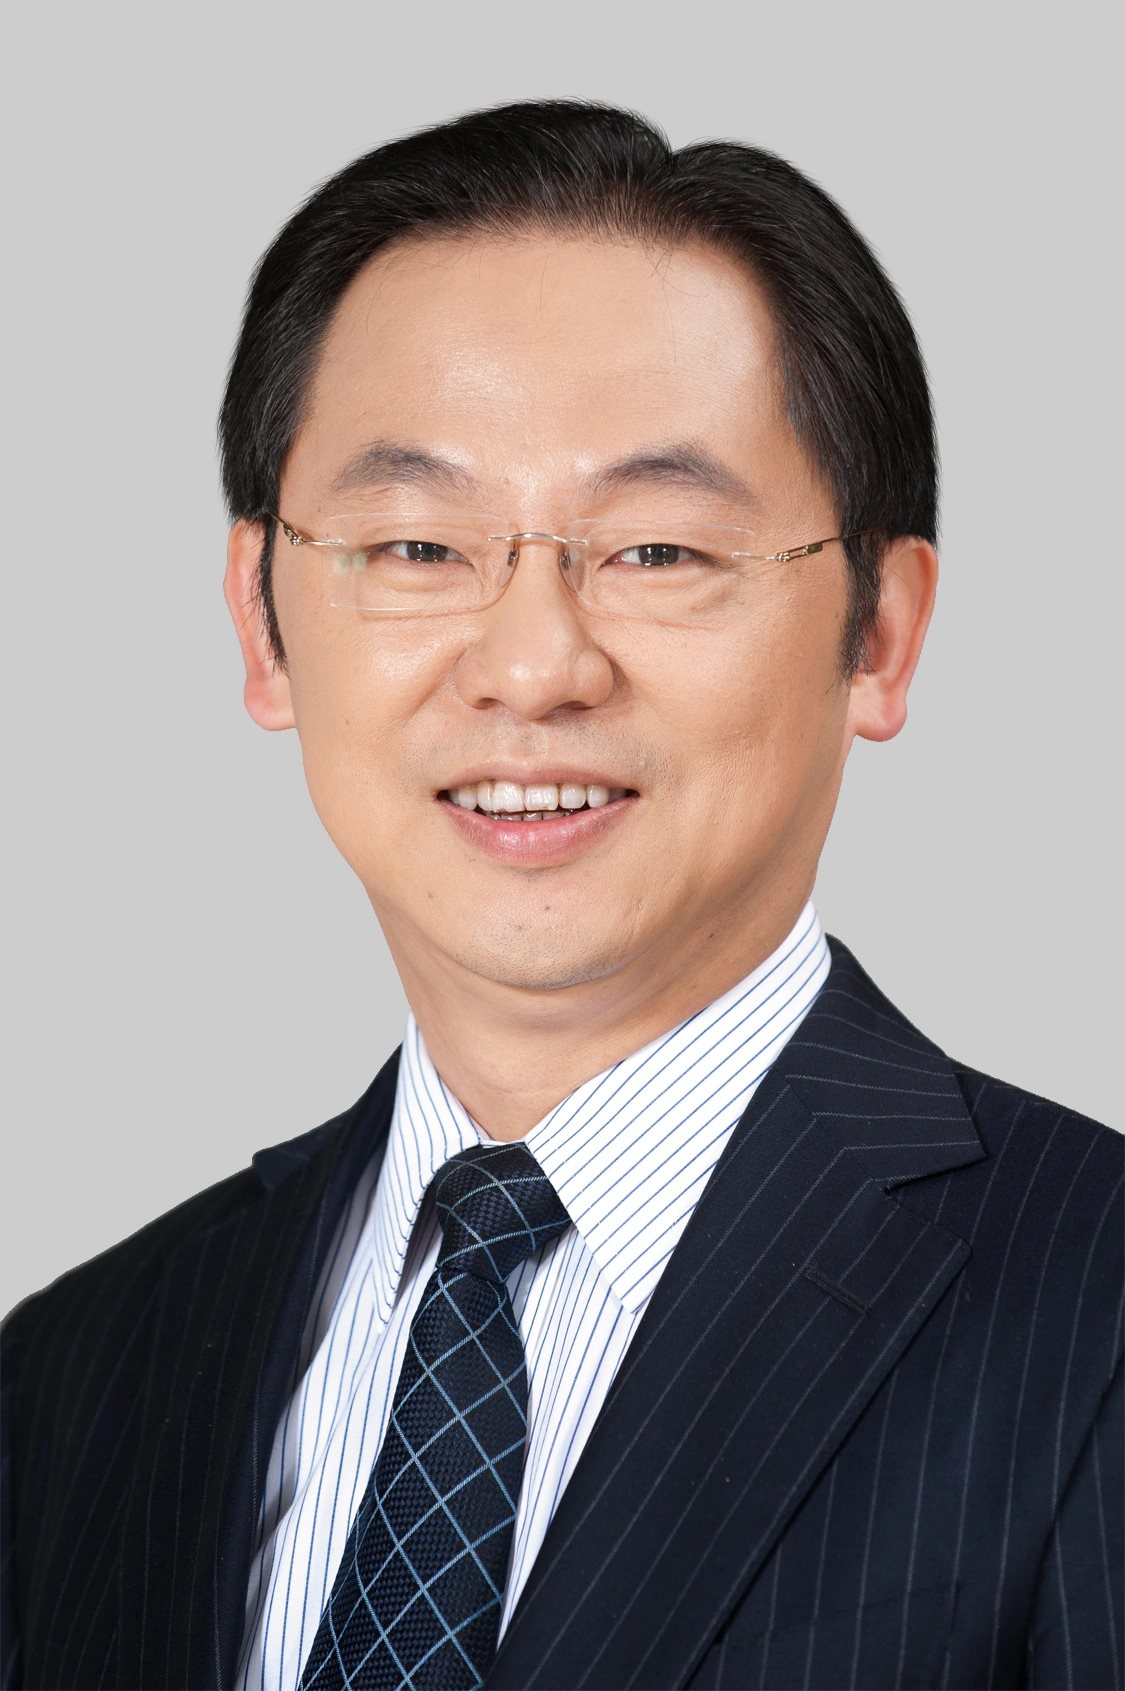 Ryan Ding, Executive Director und Präsident der Carrier Business Group von Huawei